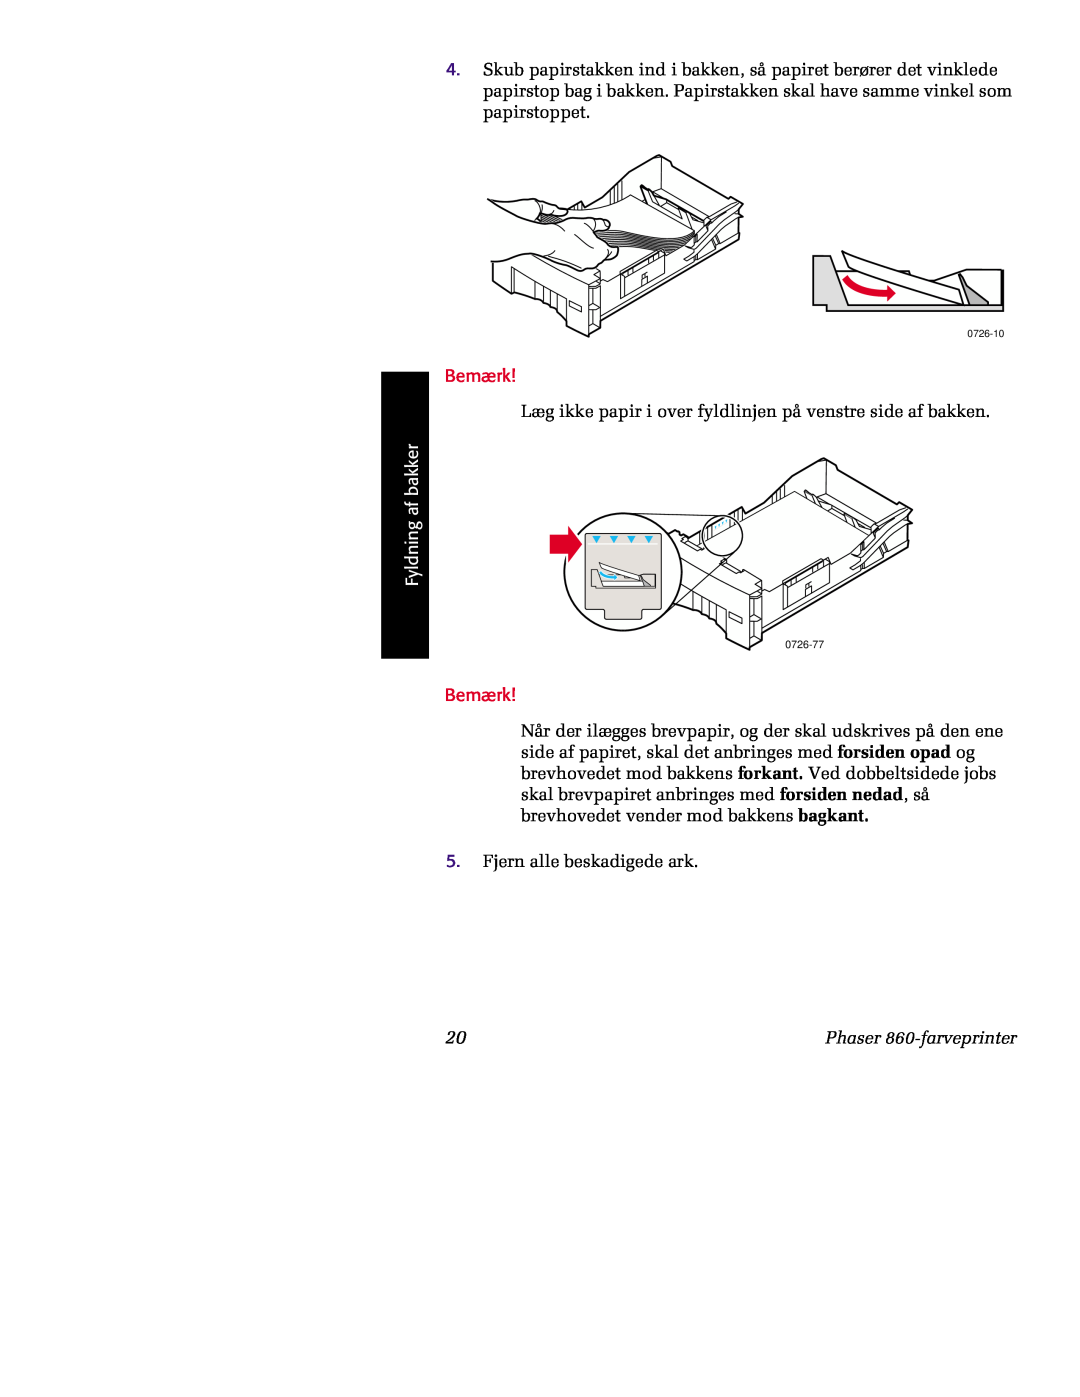 Tektronix 860 manual Bemærk, Læg ikke papir i over fyldlinjen på venstre side af bakken, Fyldning af bakker 